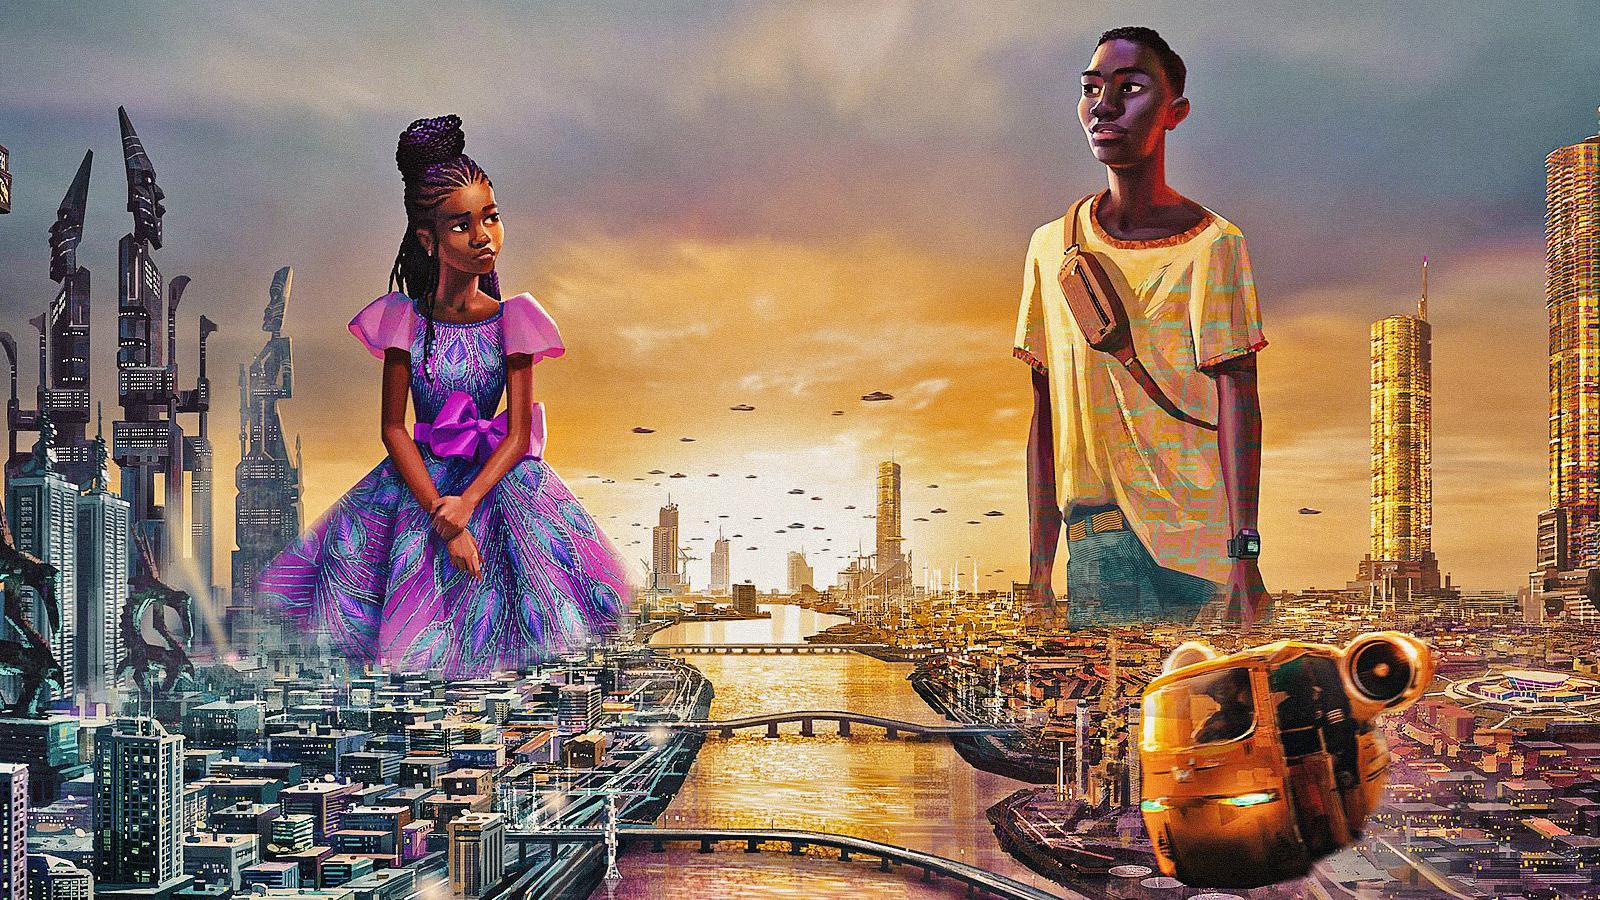 Iwájú: City of Tomorrow, la recensione: una serie animata dall’Africa con (poco) furore